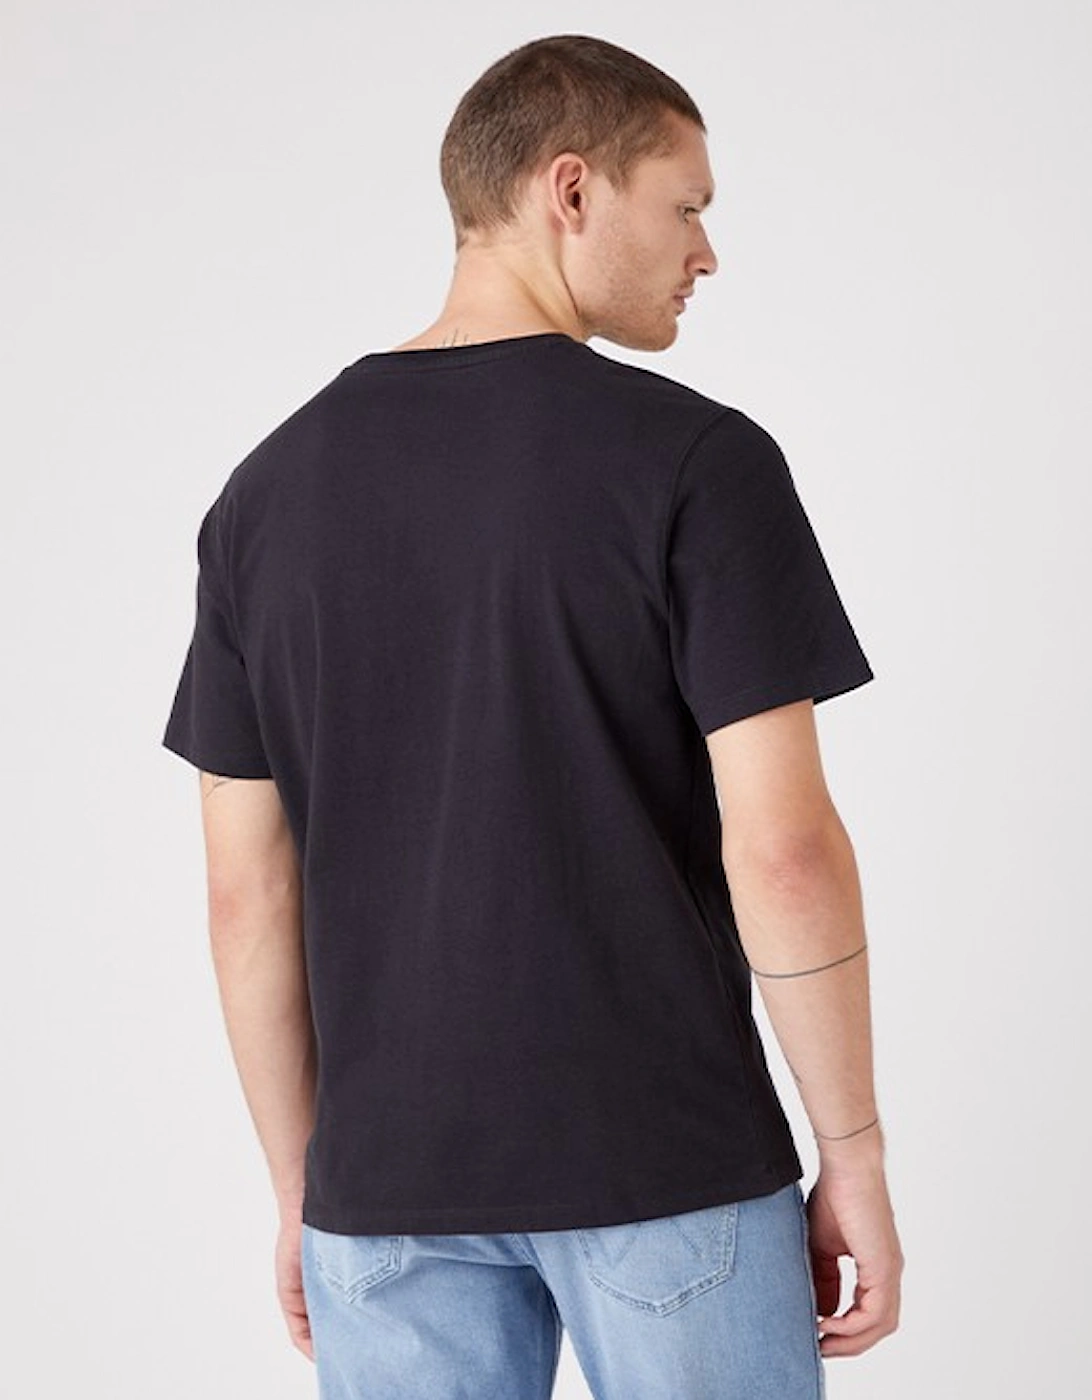 Men's Collegiate T-Shirt Faded Black